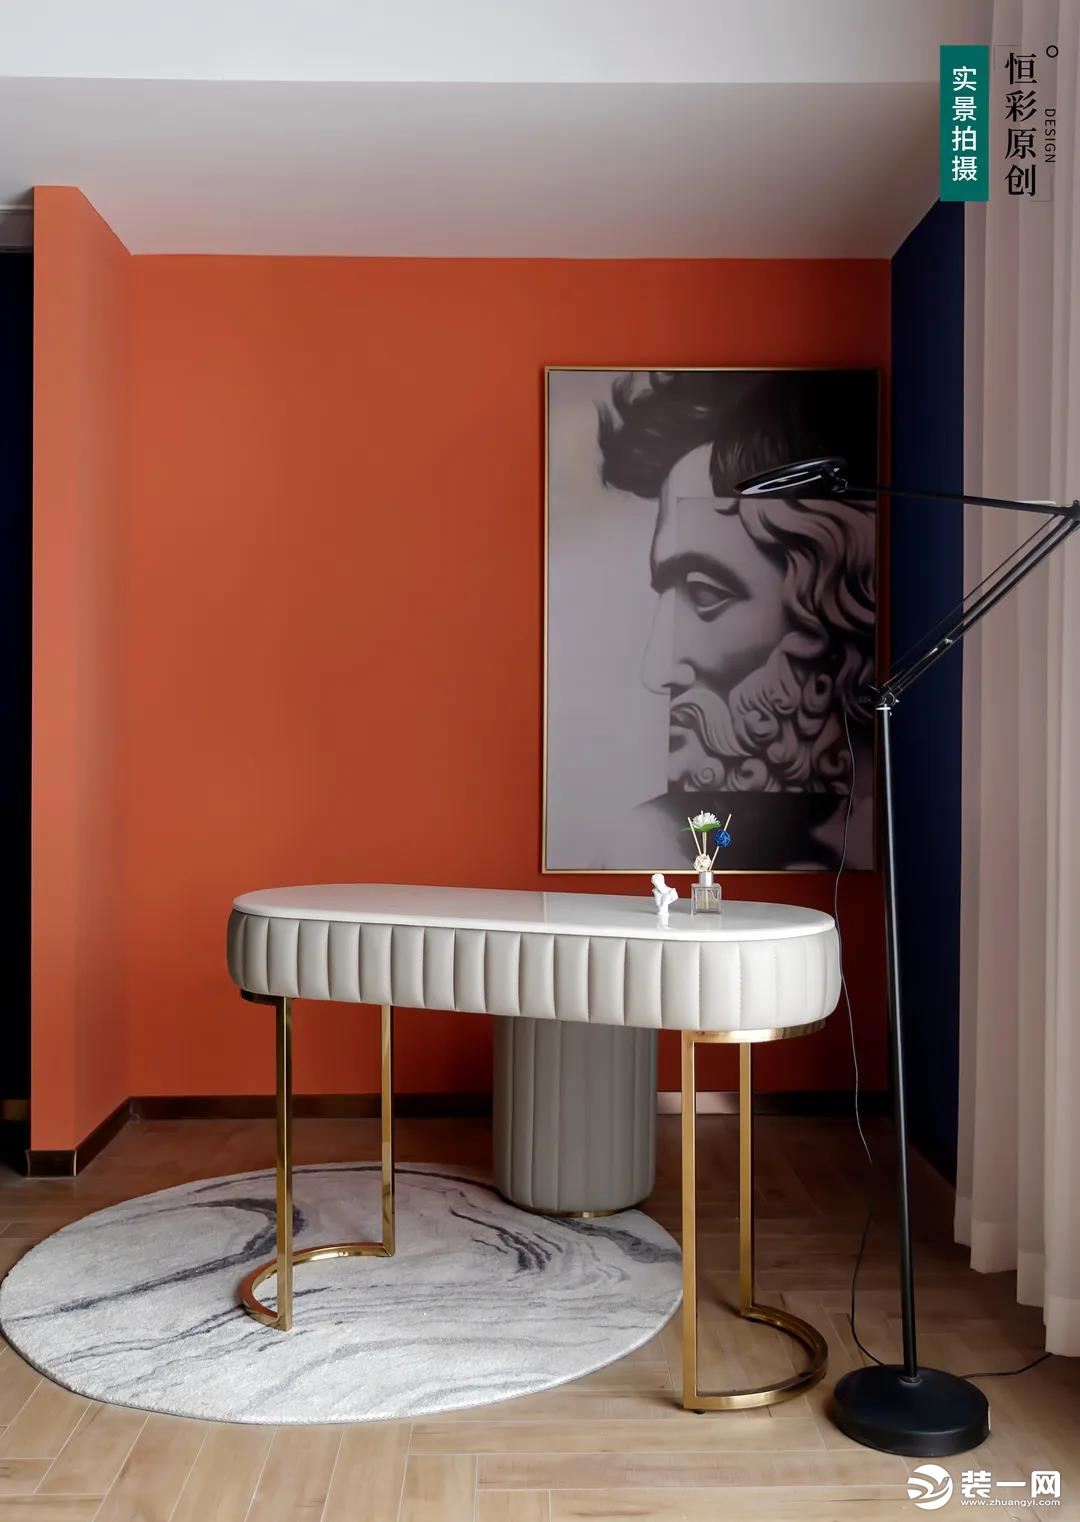 化妆区设简单的化妆凳， 橙色墙面搭配黑色踢脚线， 色彩对比感强烈。 